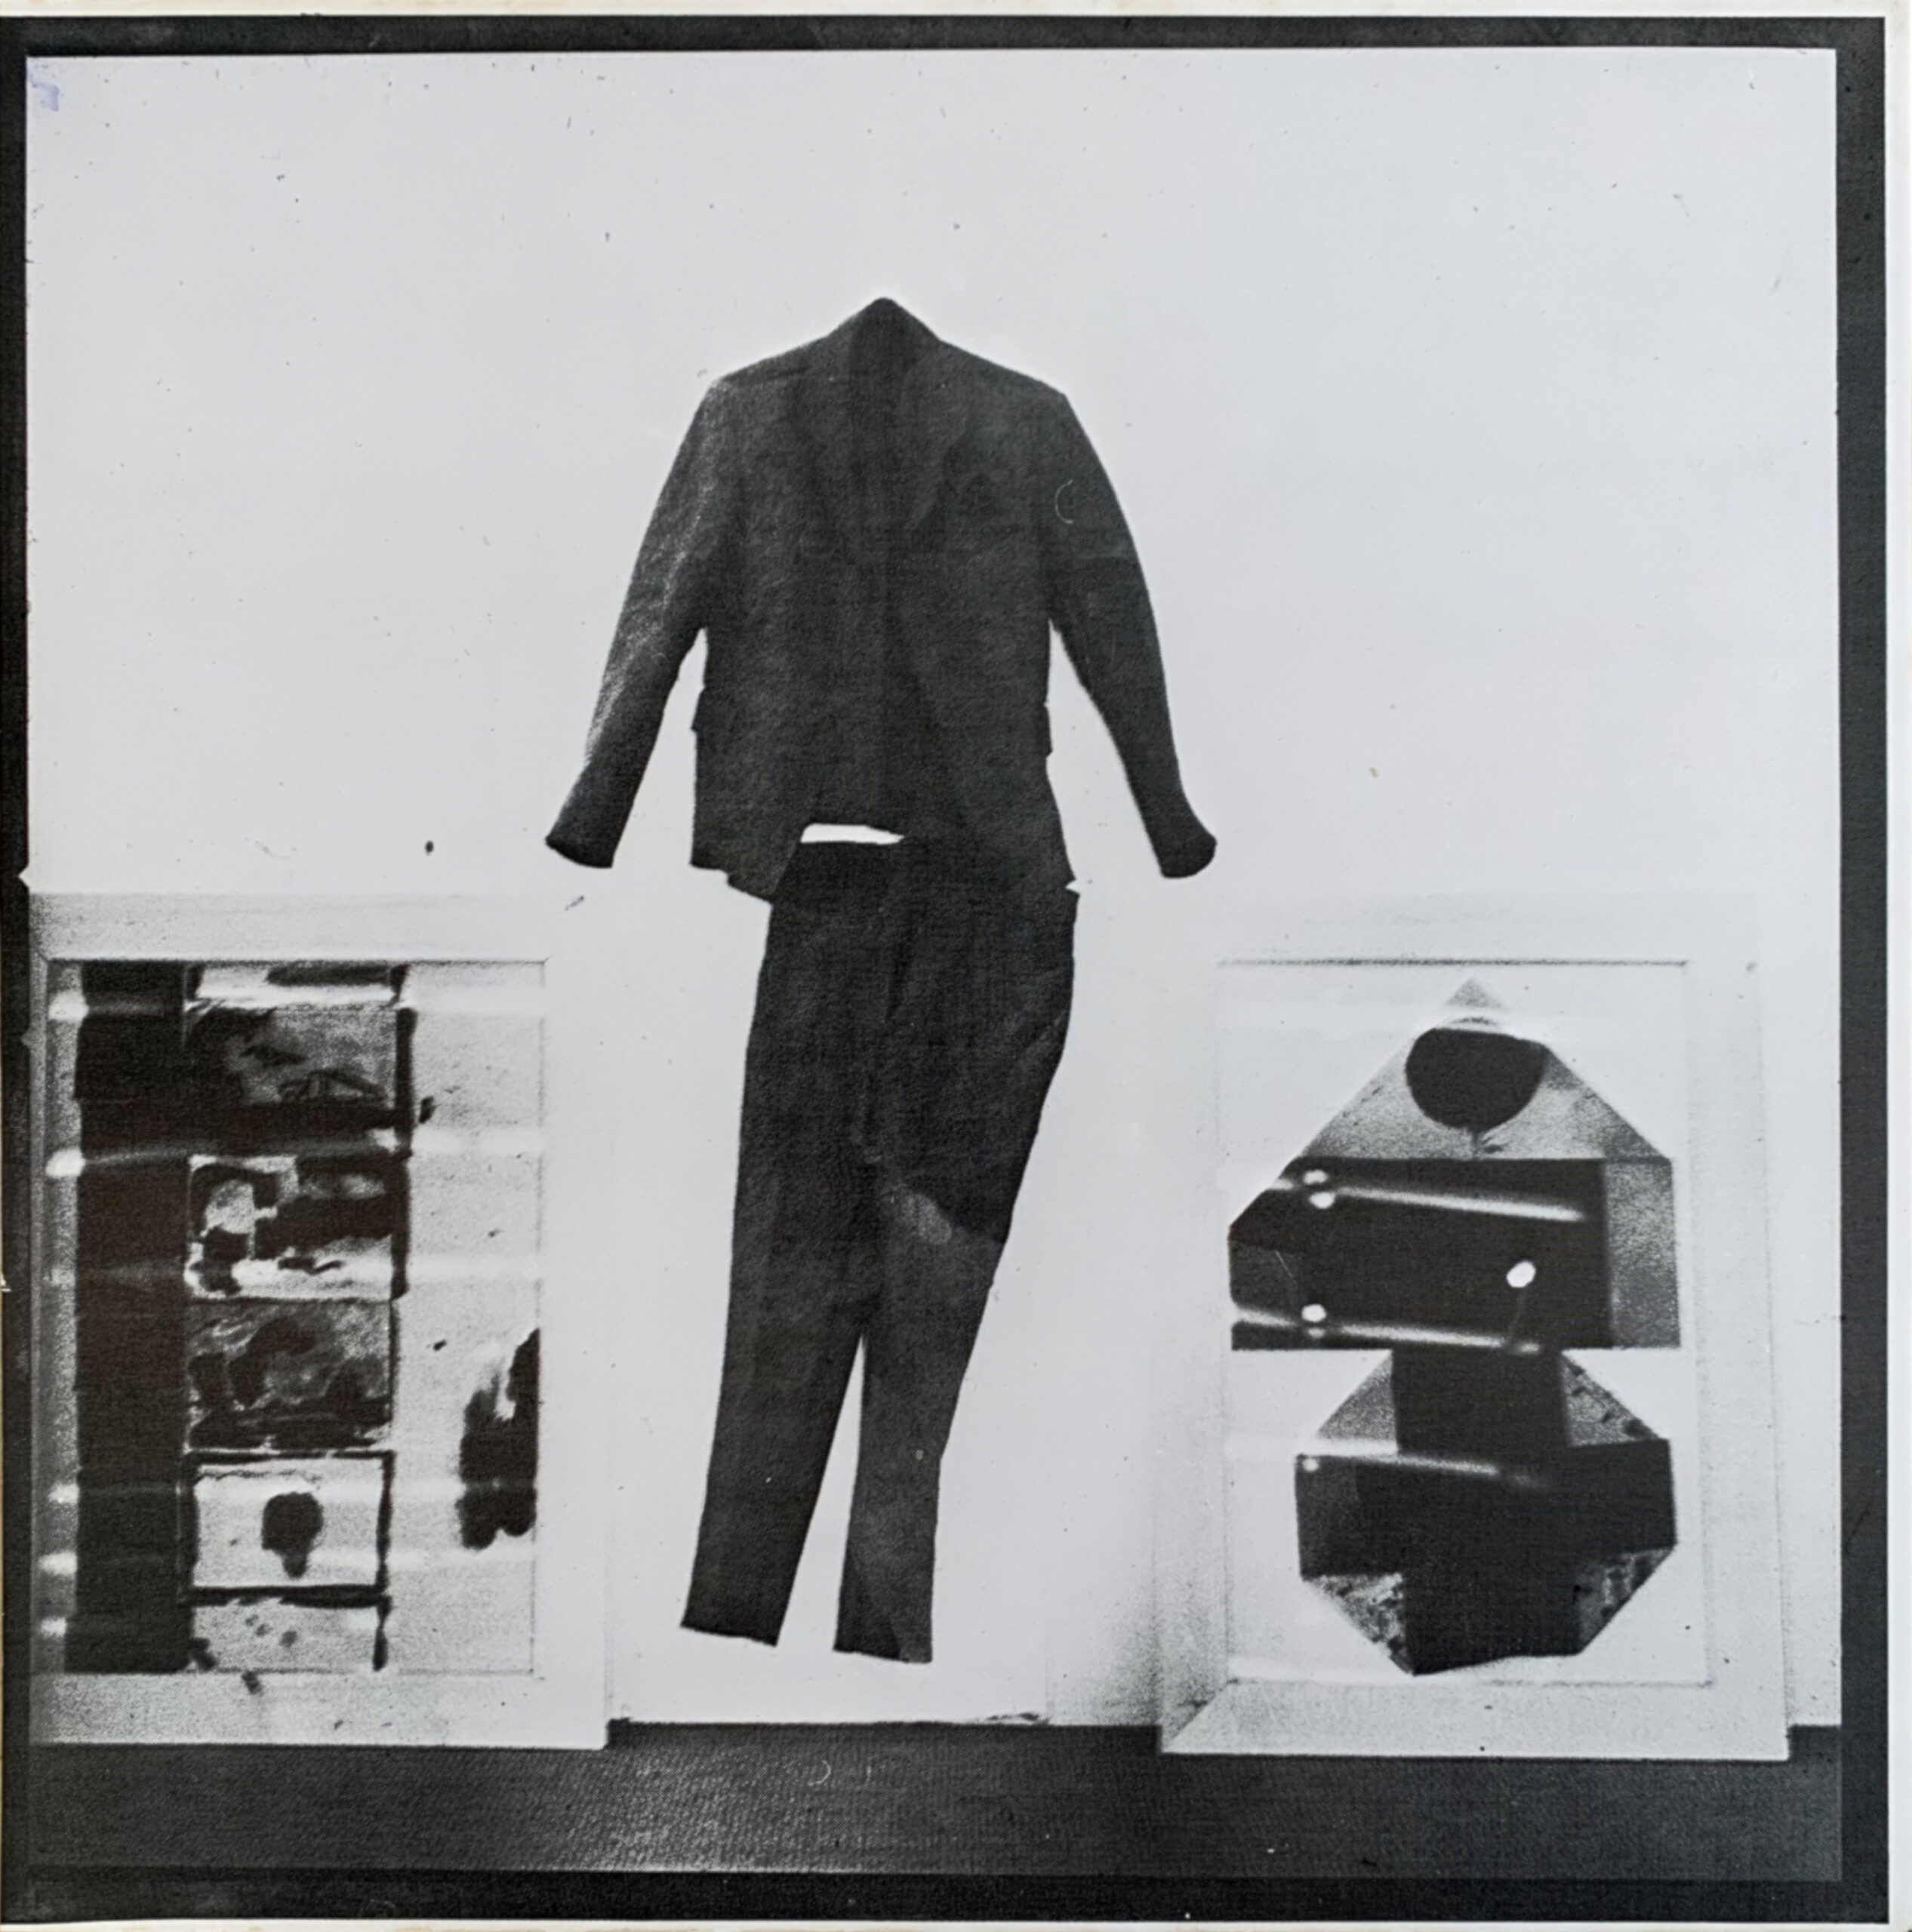 Joseph Beuys, 3 tonnen editionen